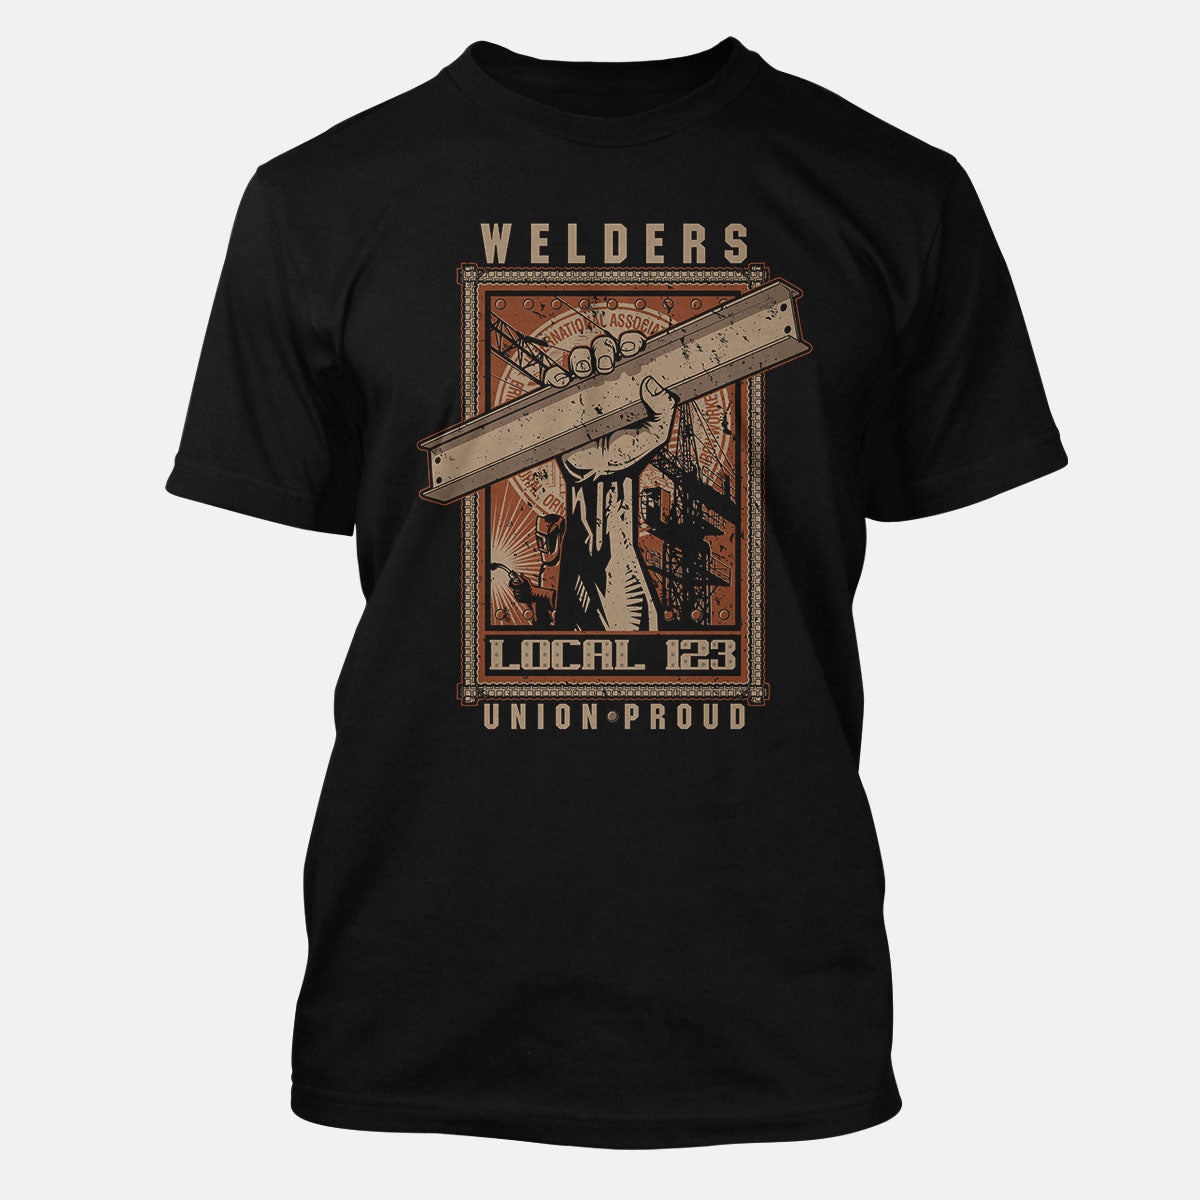 IW Welders Girder/Fist Union Apparel